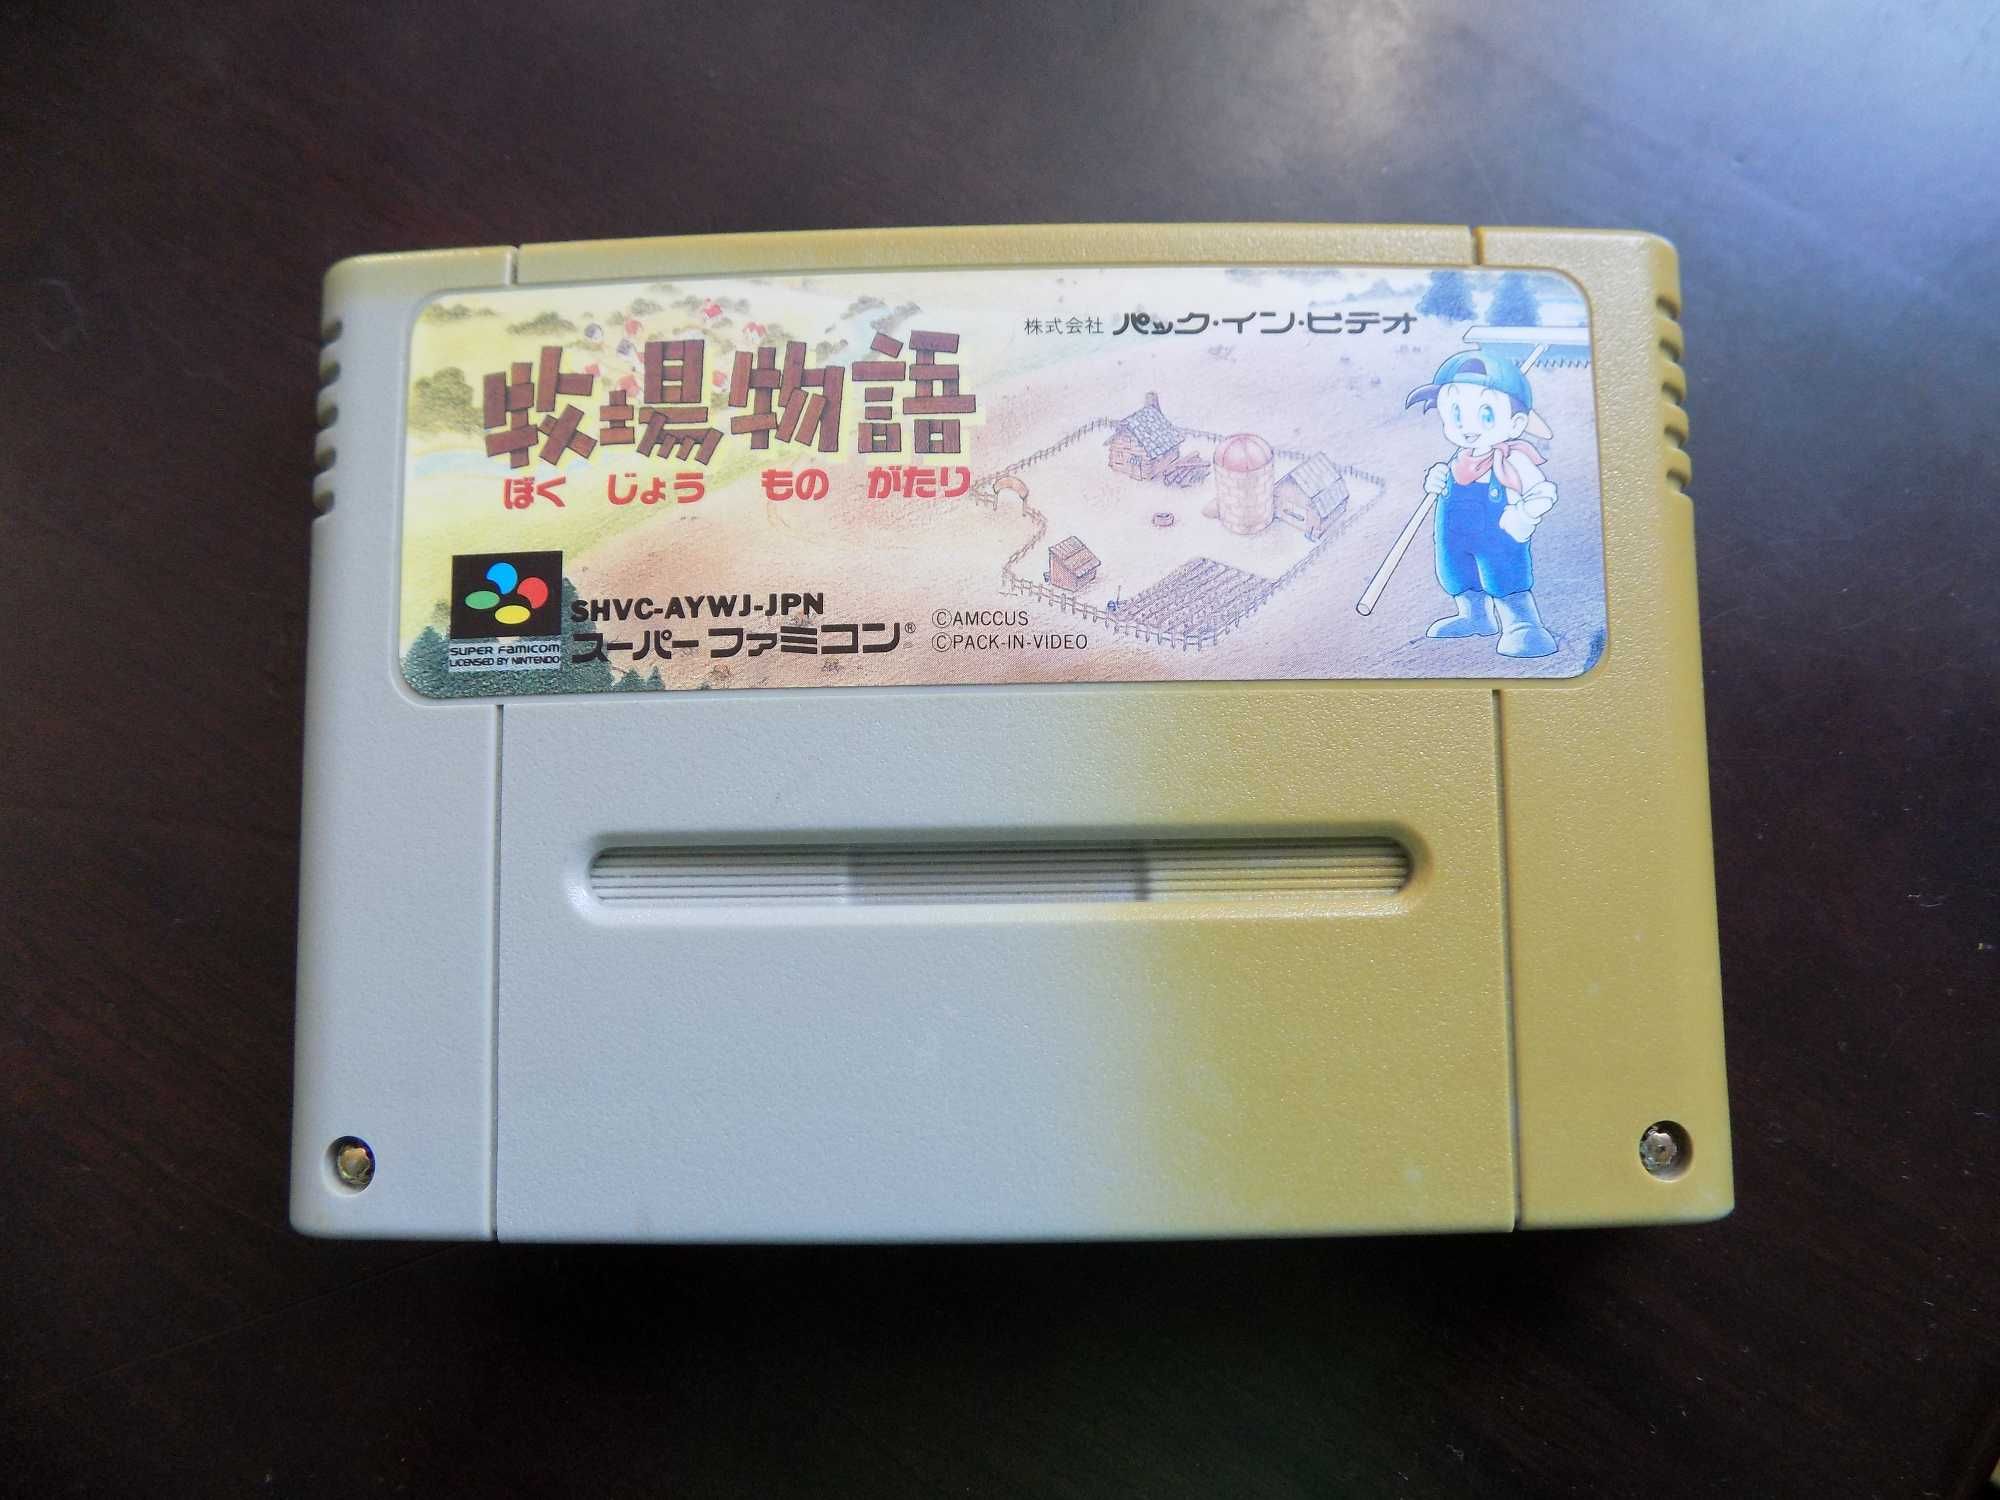 Harvest Moon Super Famicom (SFC / SNES) - super gra na Nintendo